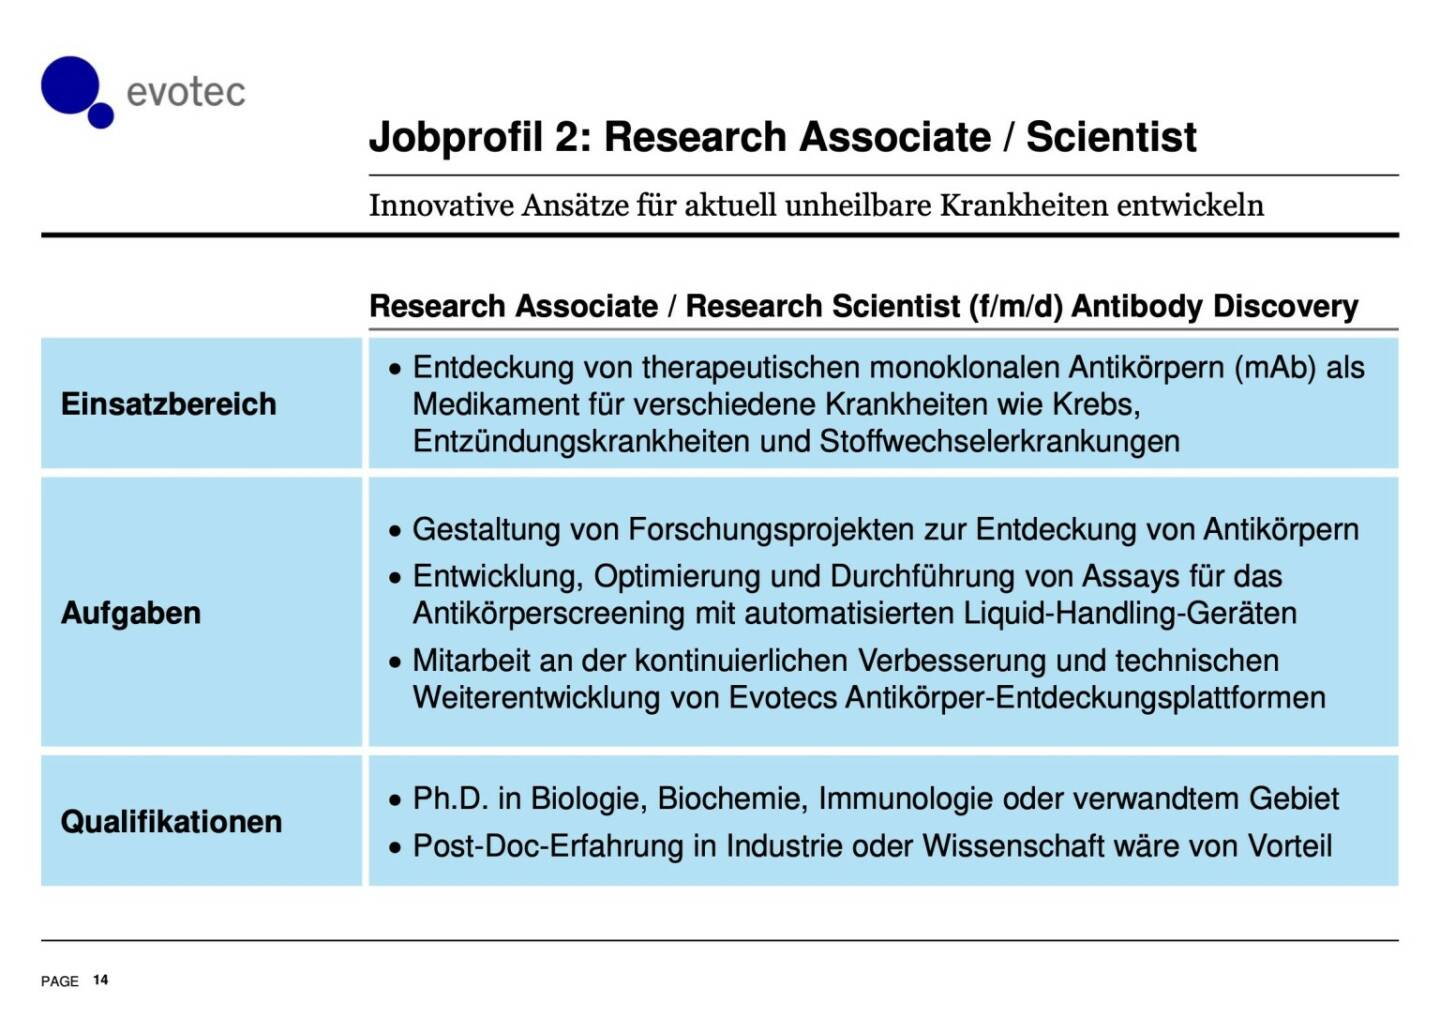 Evotec - Jobprofil 2: Research Associate / Scientist